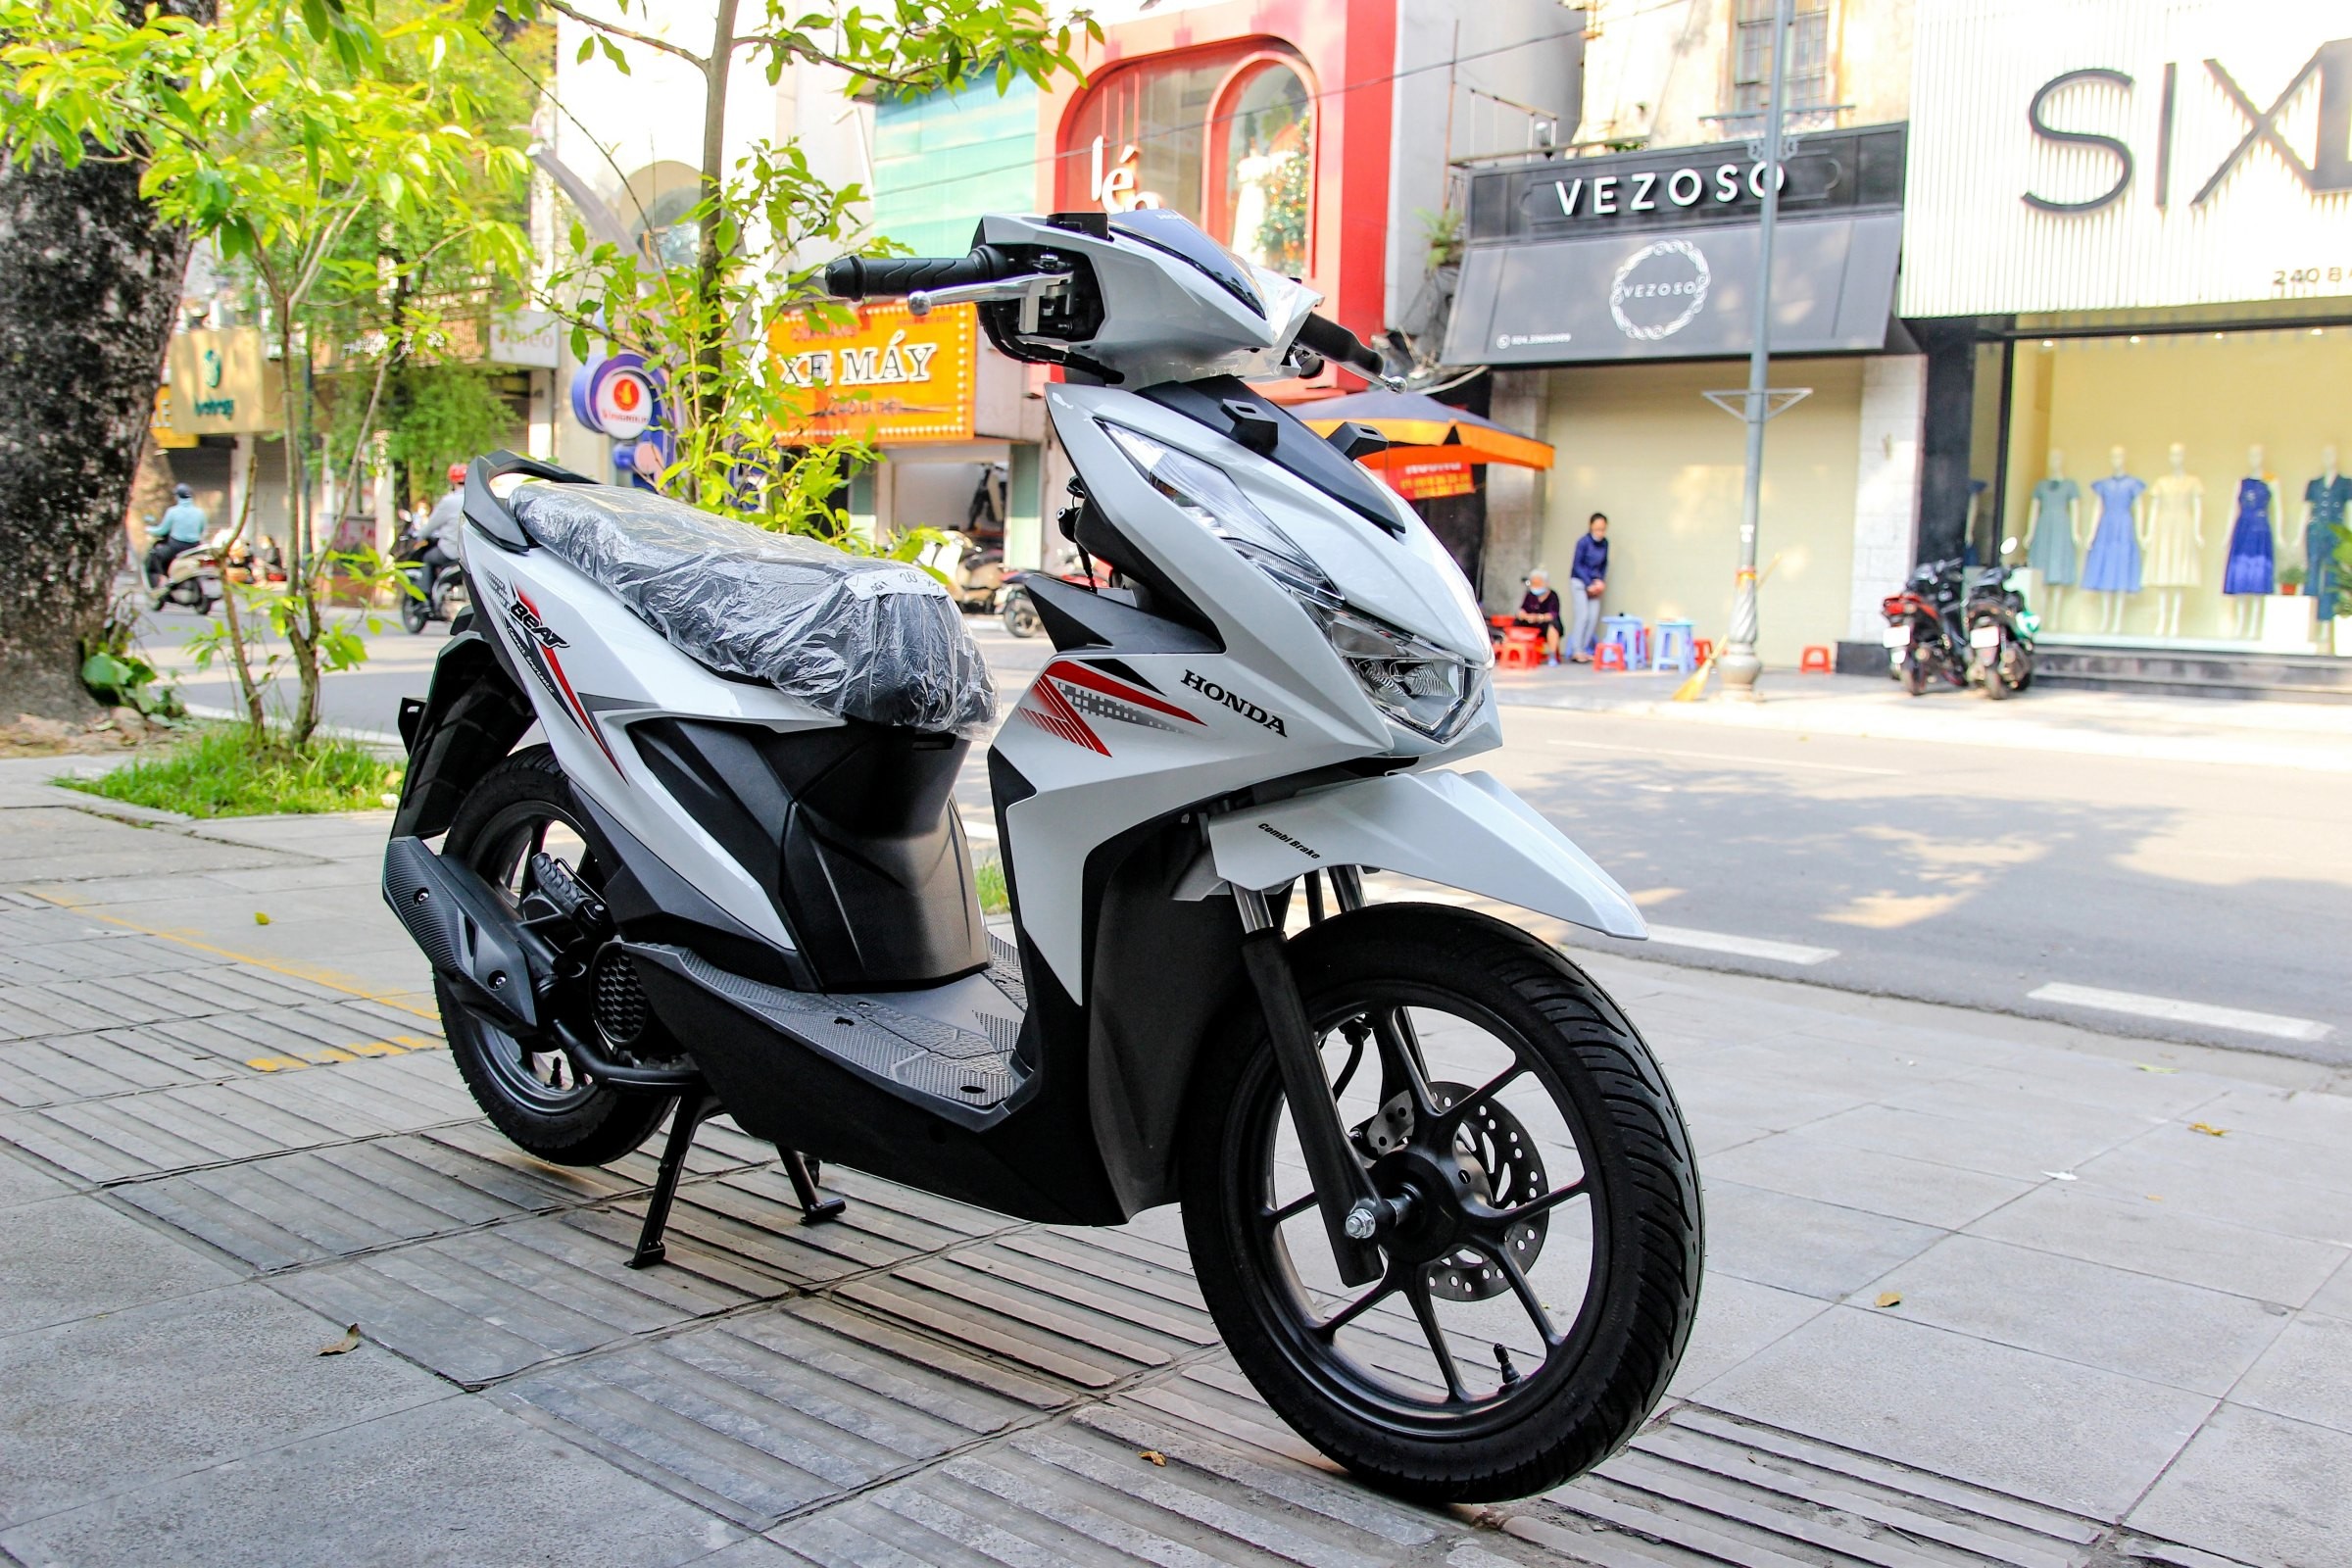 Honda Beat 2020 Nhập Khẩu Về VN Giá 35 Triệu Đồng  Xe Máy Vĩnh Trường  Tiền Giang